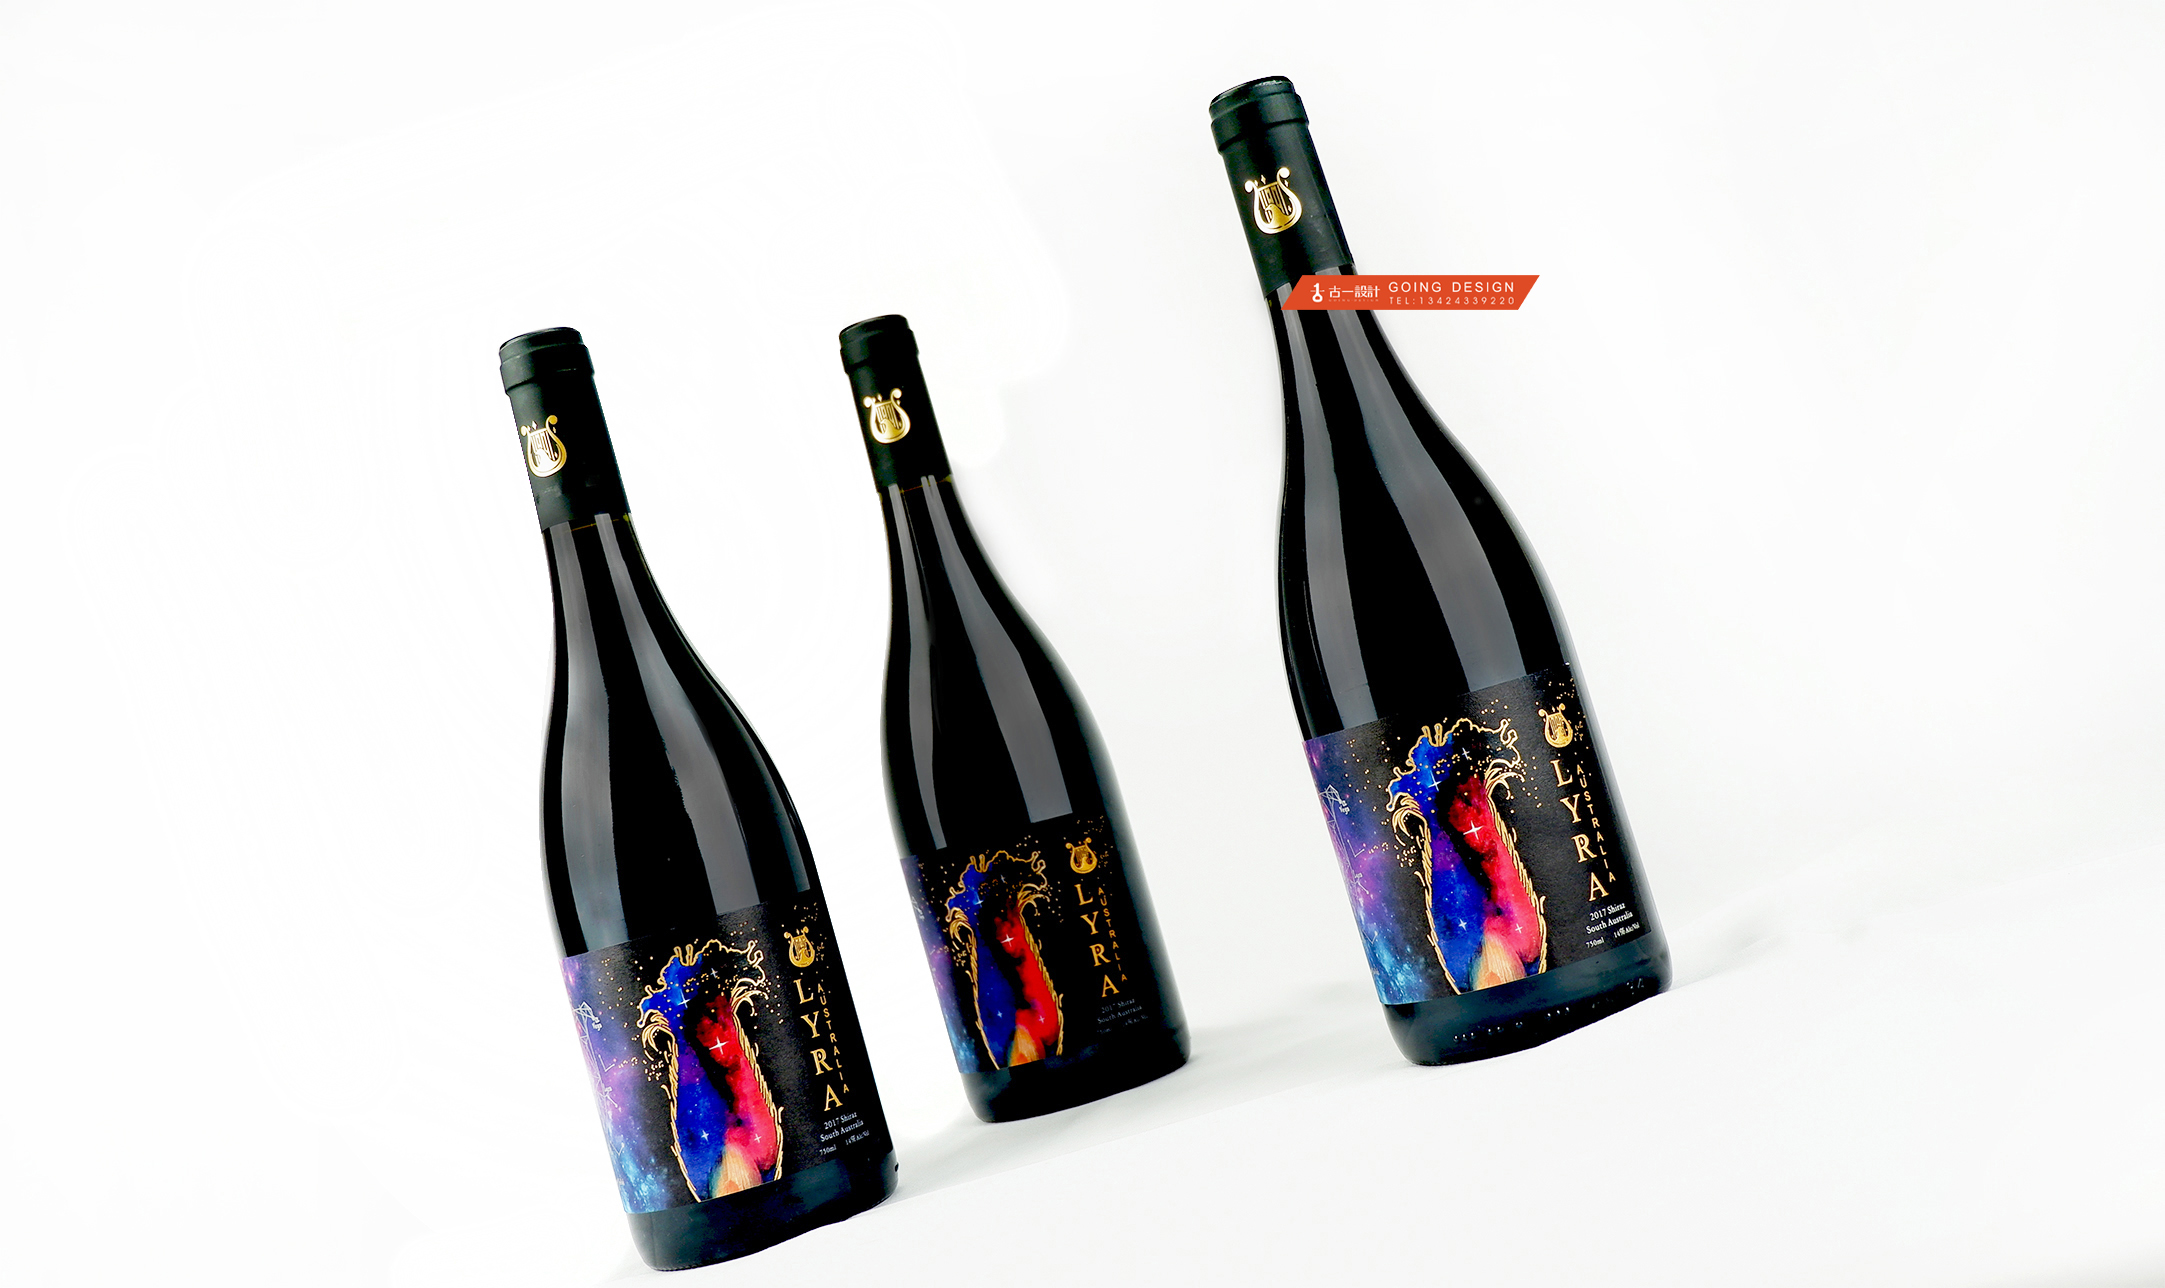 澳琴庄红酒品牌设计,红酒包装设计,古一设计,包装设计公司,进口酒设计,产品包装设计,酒标设计